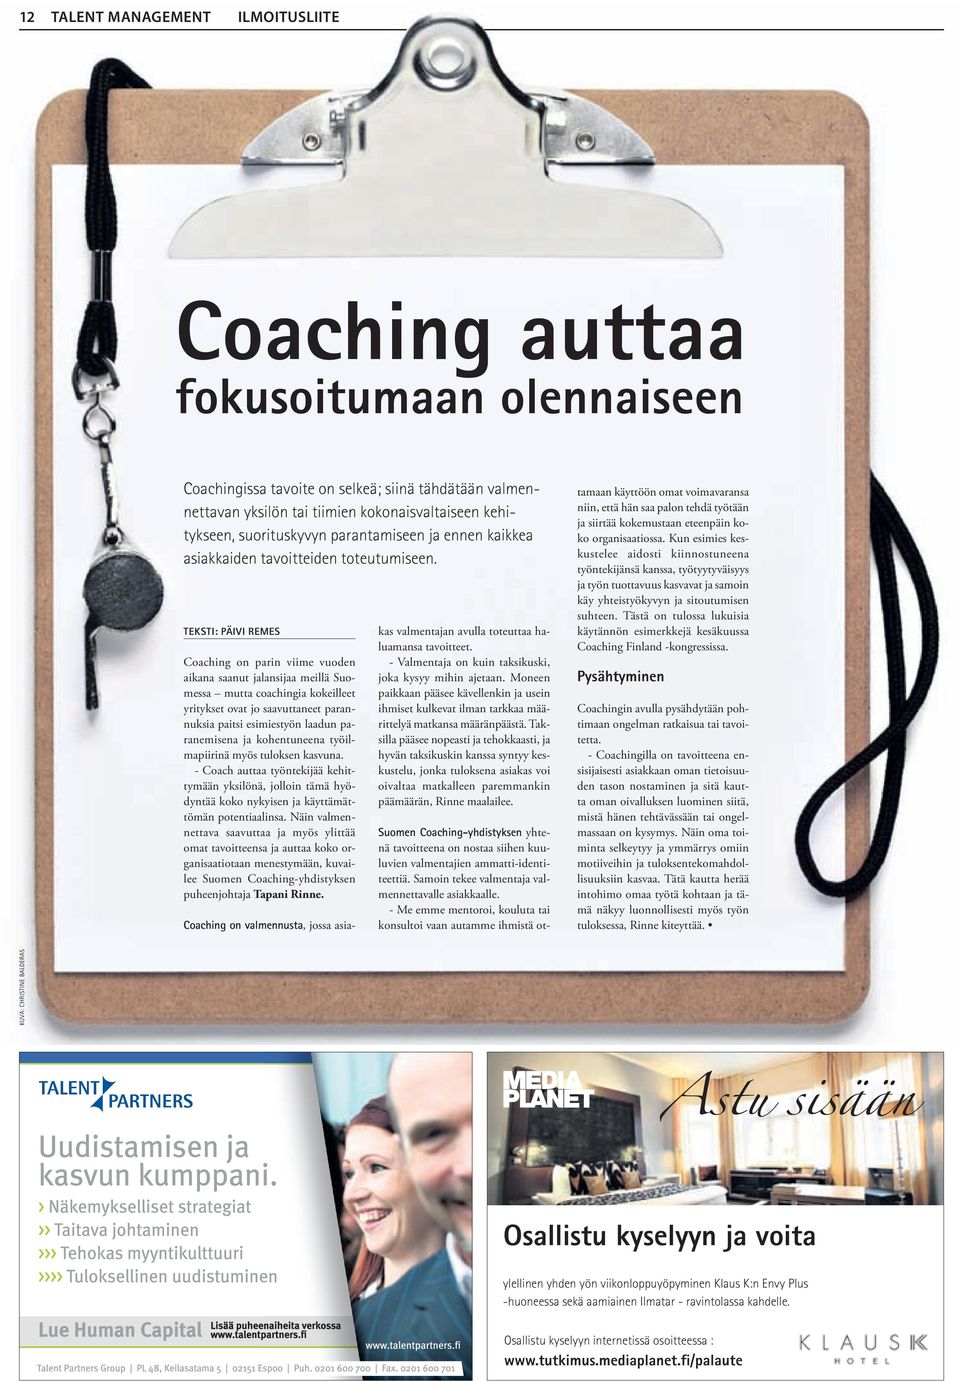 teksti: päivi remes Coaching on parin viime vuoden aikana saanut jalansijaa meillä Suomessa mutta coachingia kokeilleet yritykset ovat jo saavuttaneet parannuksia paitsi esimiestyön laadun